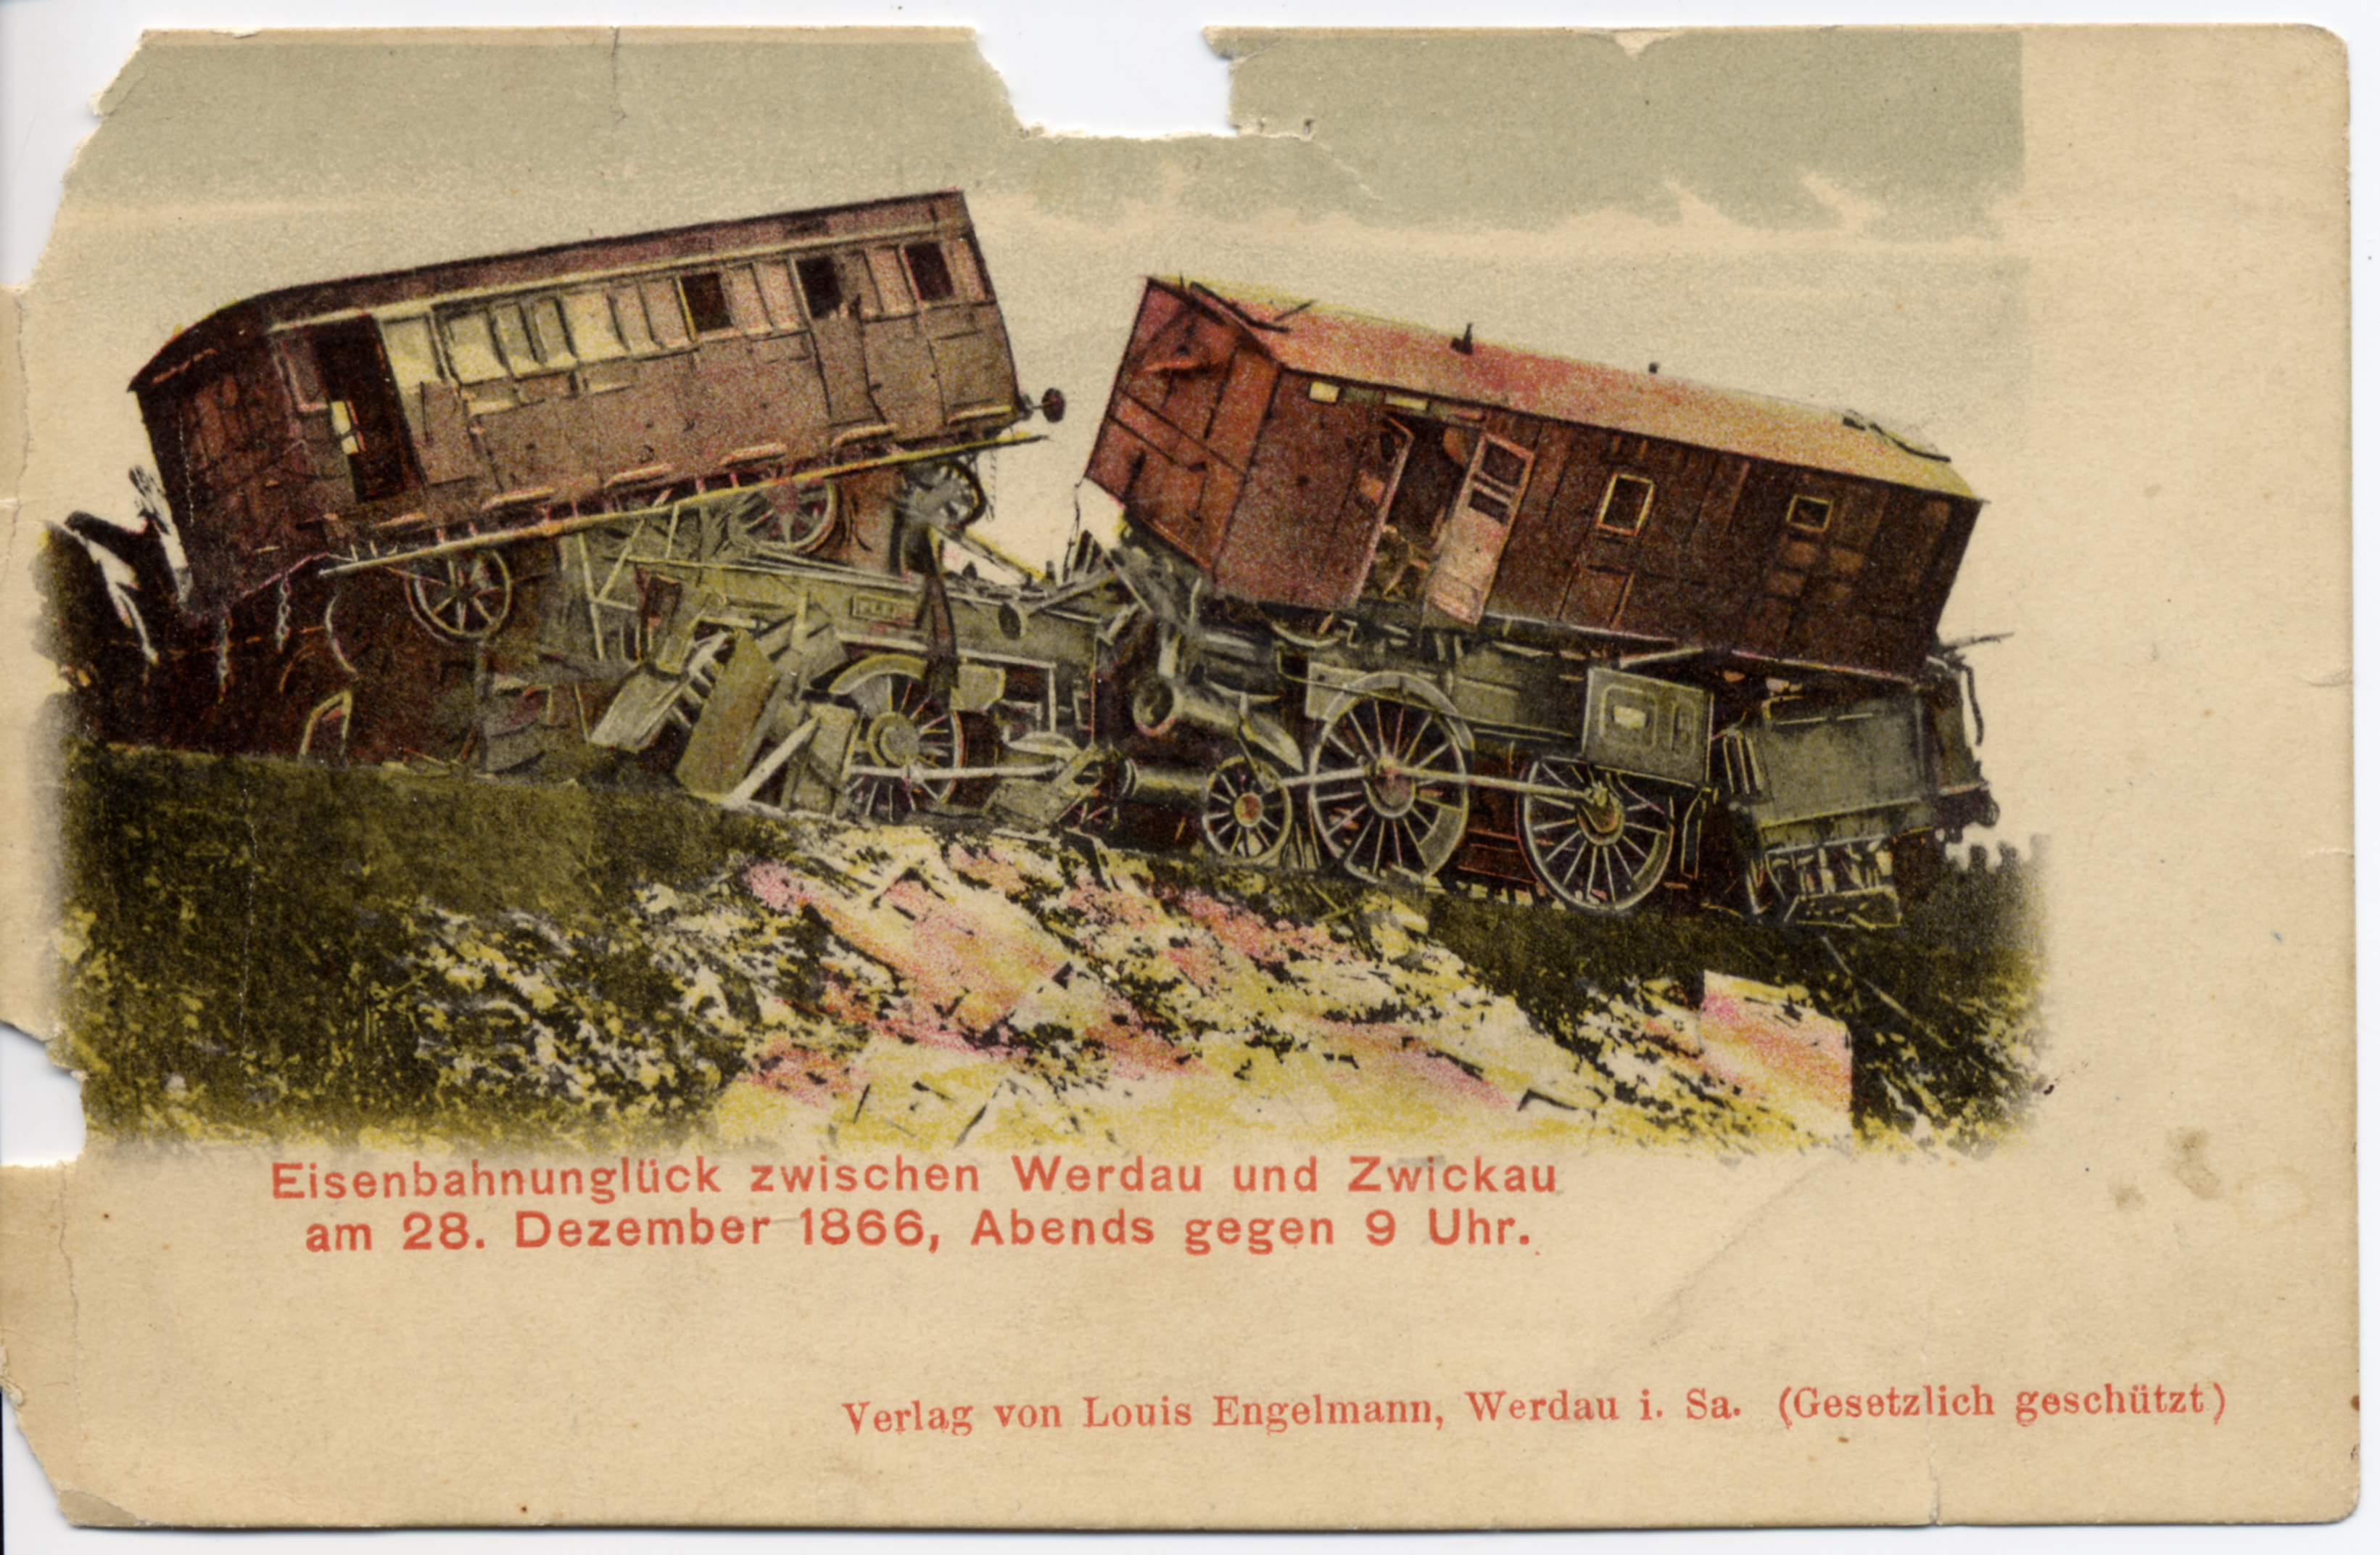 Postkarte mit dem Eisenbahnunglück zwischen Werdau und Zwickau am 28. Dezember 1866, Abends gegen 9 Uhr